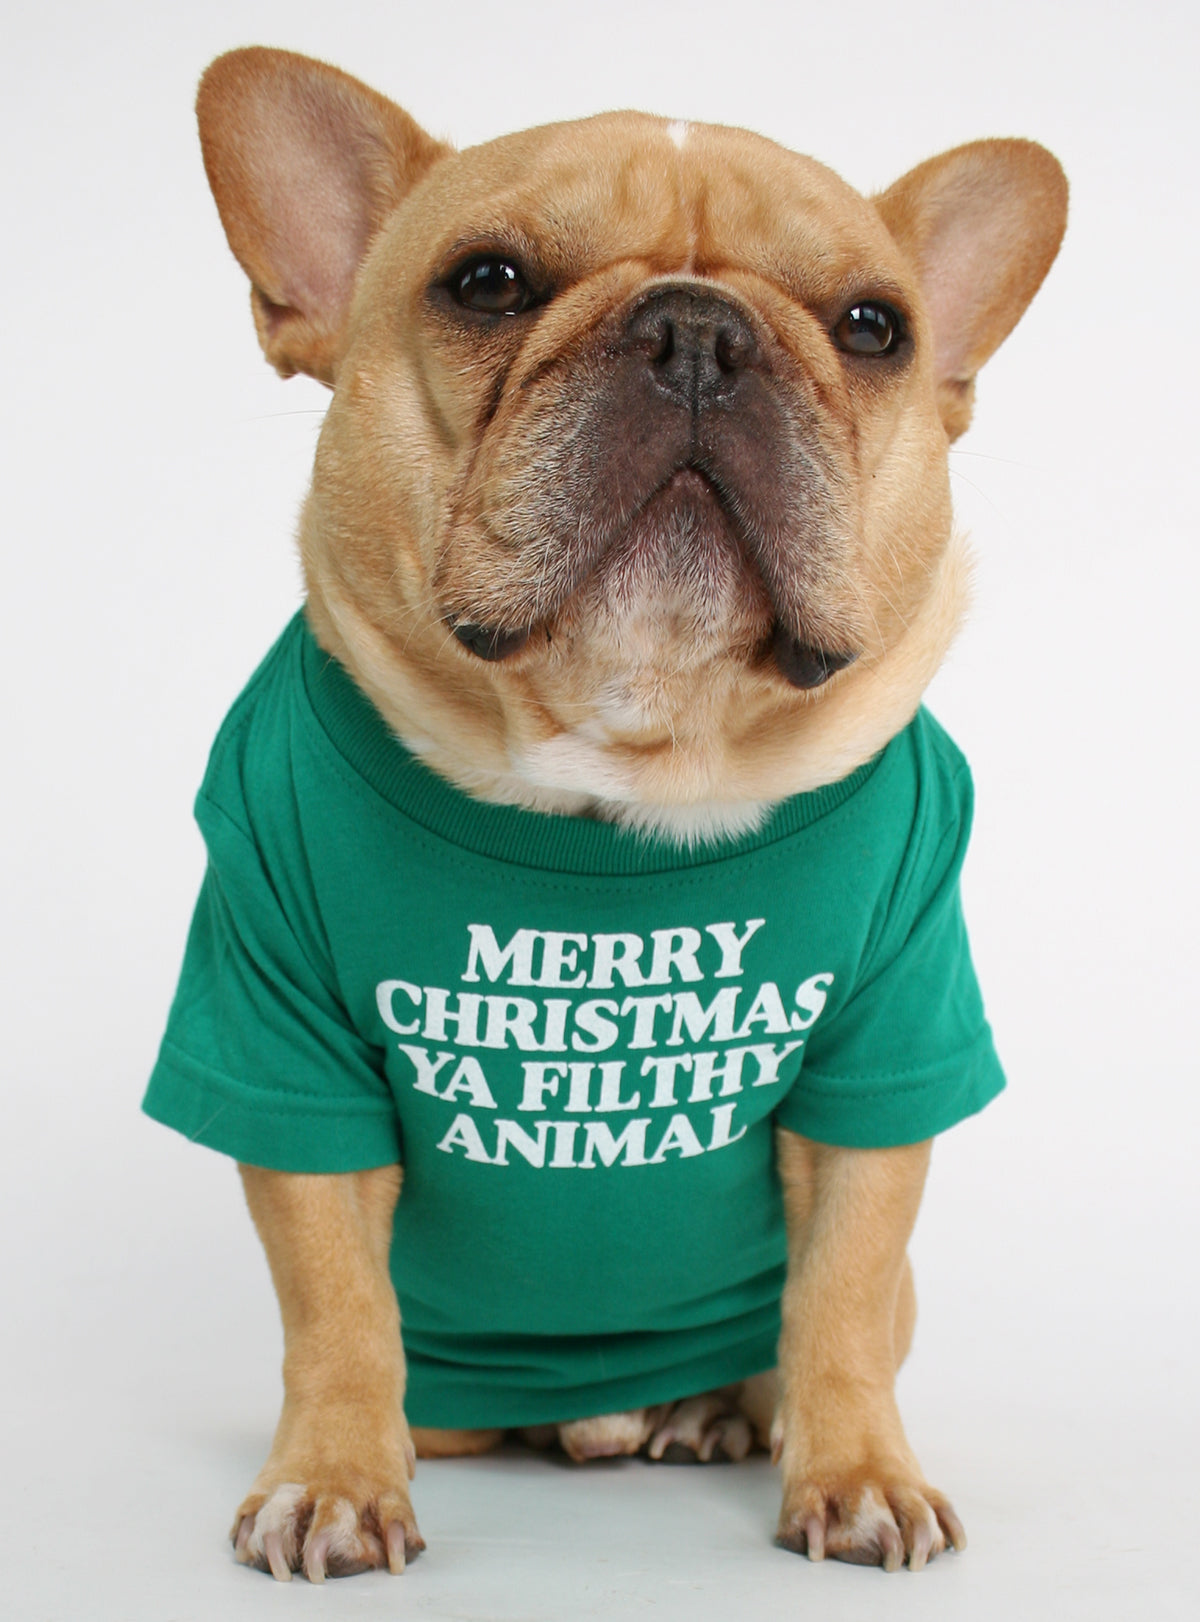 Merry Christmas Ya Filthy Animal Dog Tee